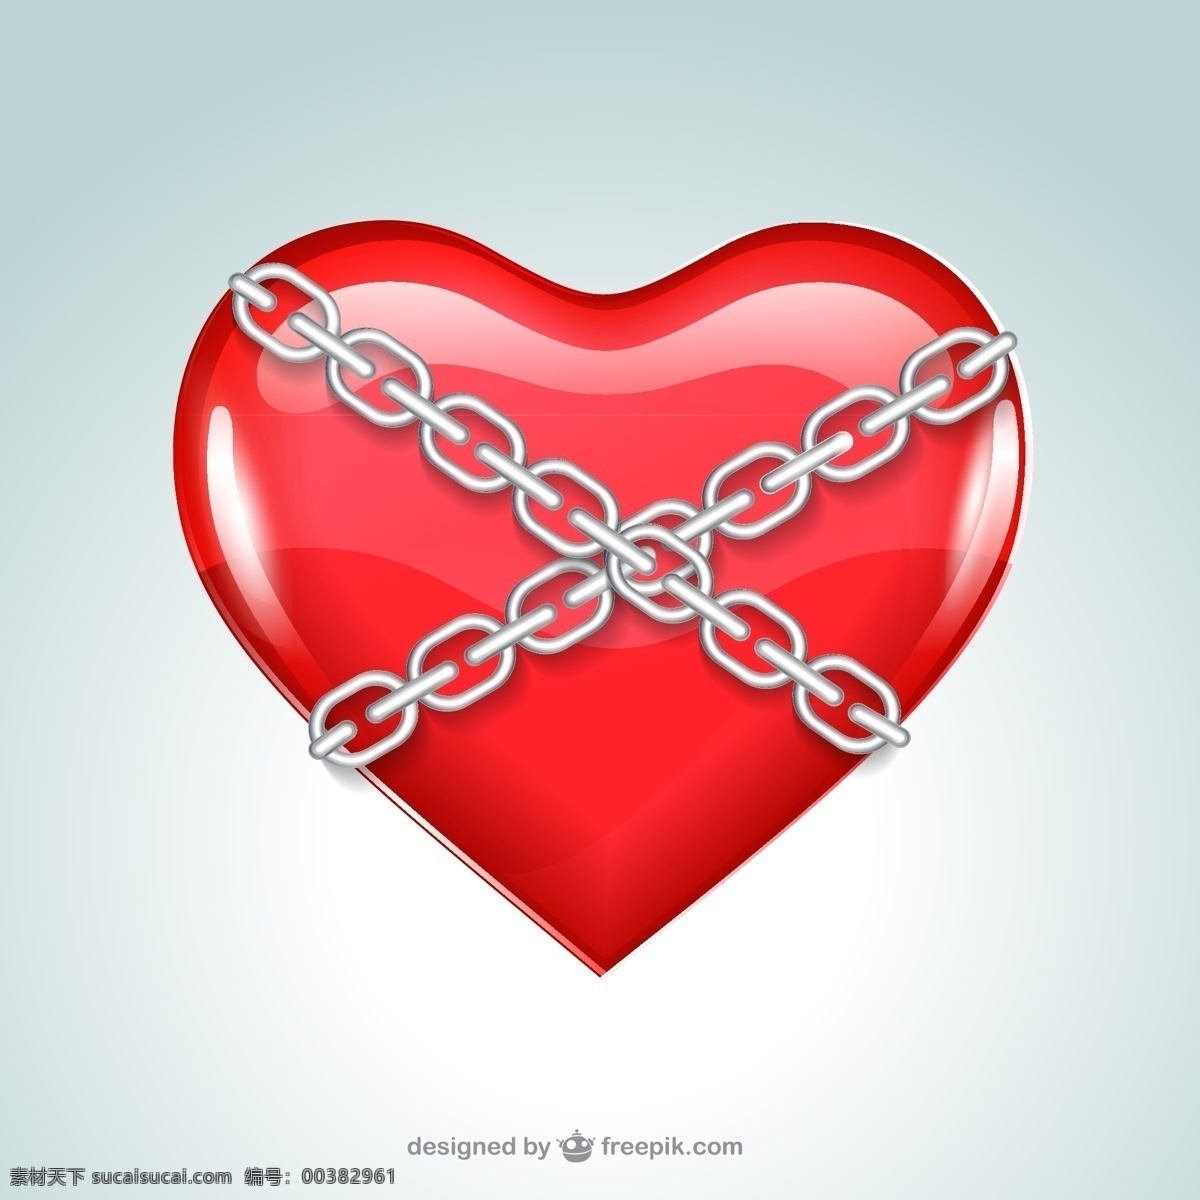 创意 铁链 捆 住 爱心 矢量 红心 矢量图 创意设计 矢量素材